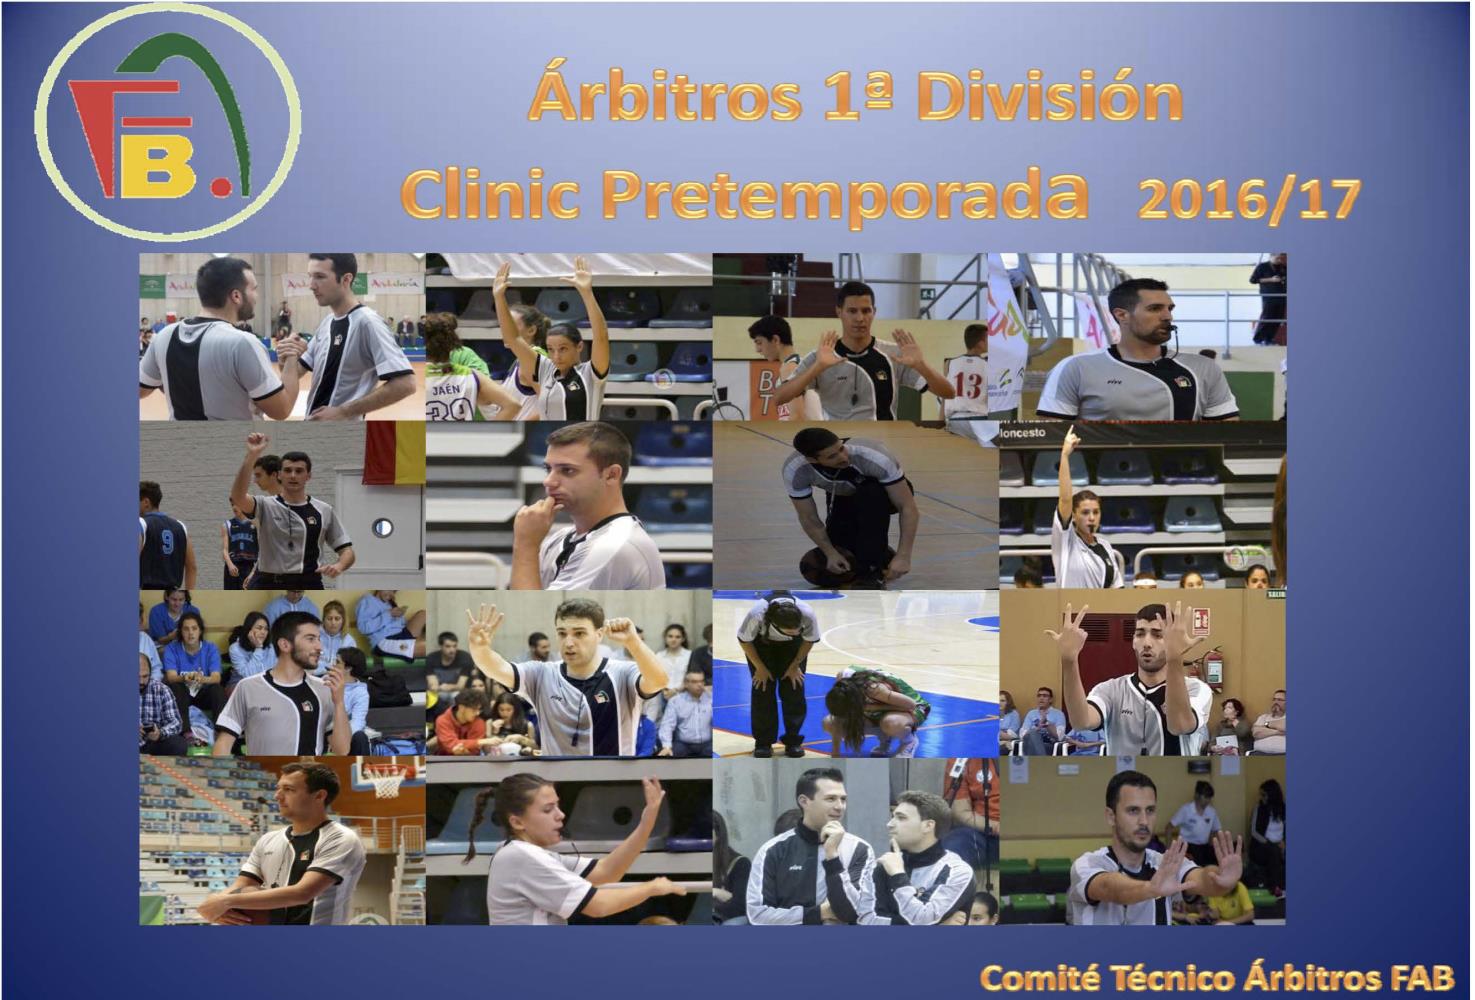 Clinic Pretemporada Arbitros 1ª Division 16/17